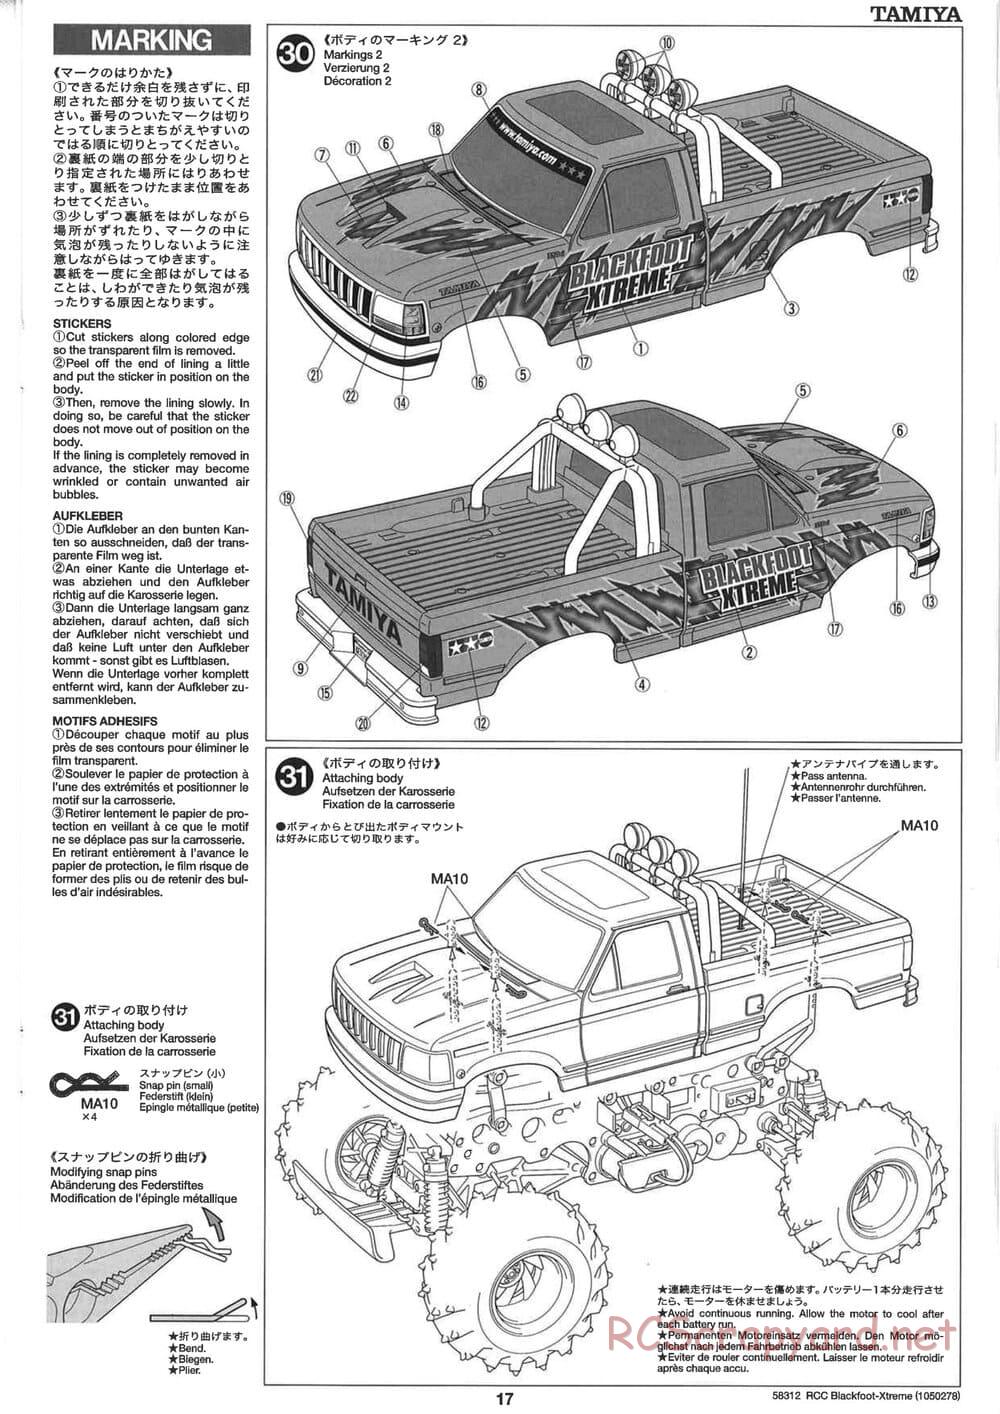 Tamiya - Blackfoot Xtreme - WT-01 Chassis - Manual - Page 17